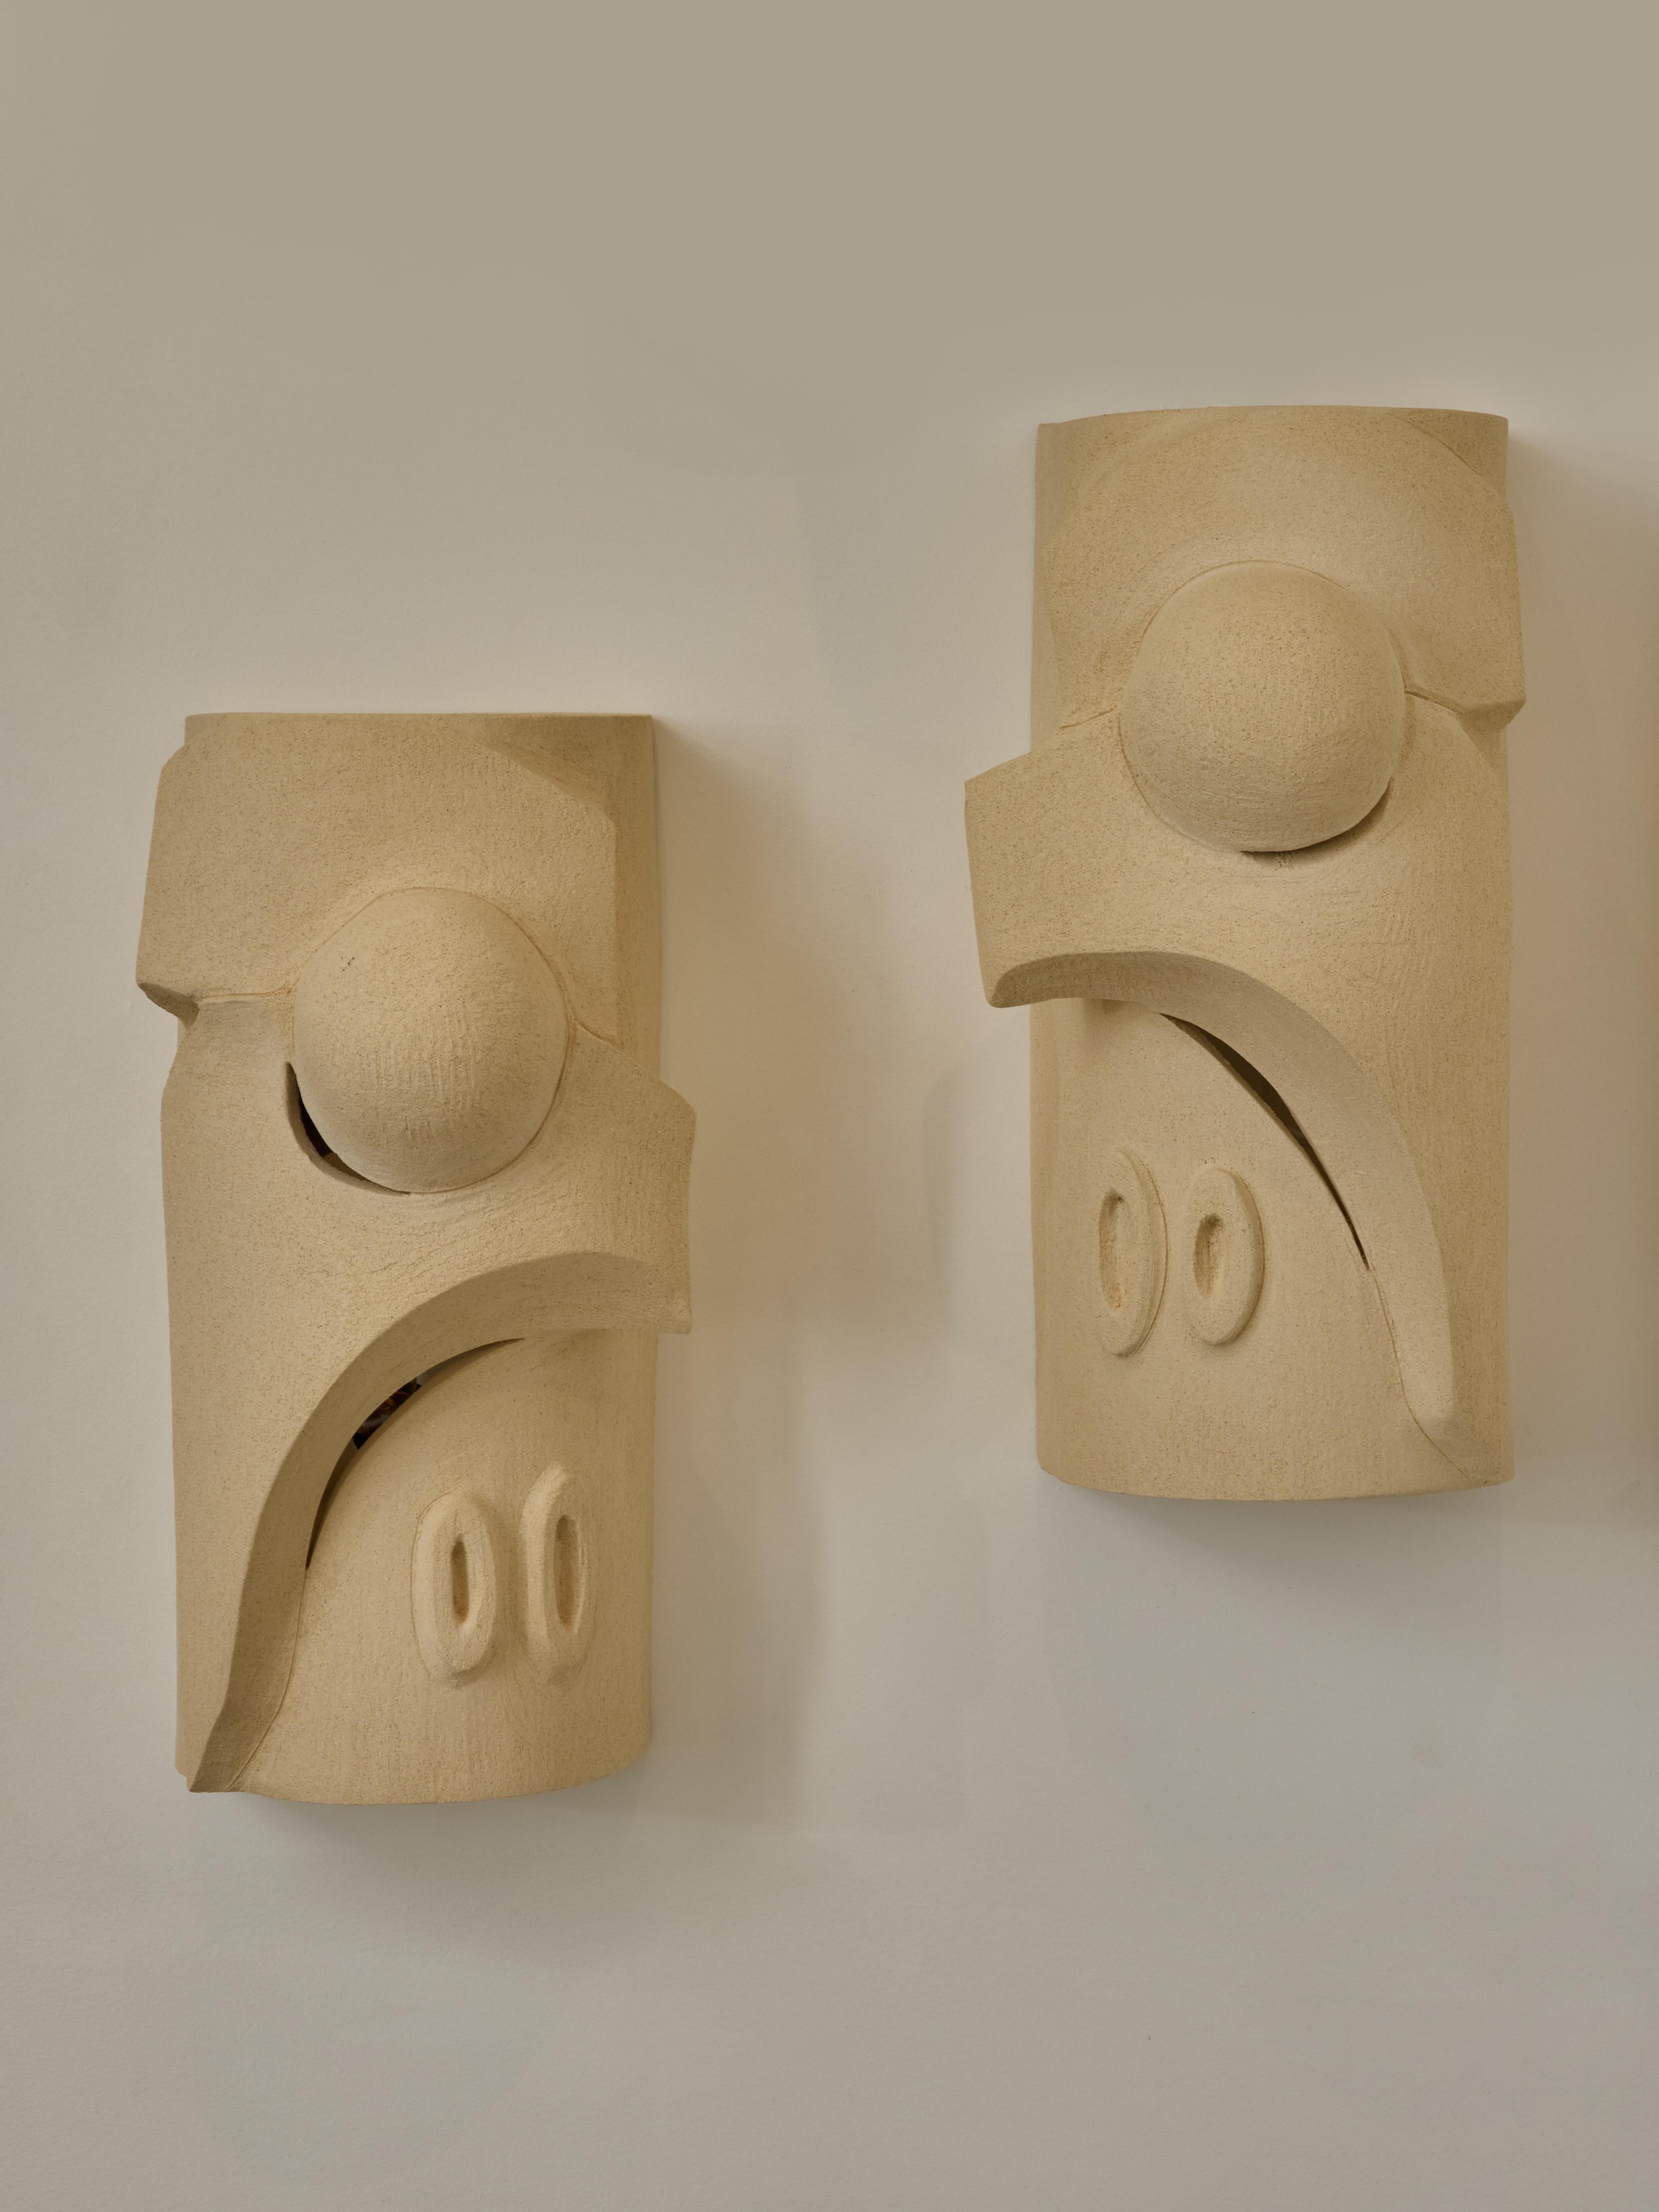 Zwei symmetrische Wandleuchten aus Keramik von Olivia Cognet, hergestellt in Vallauris, Frankreich.

Einteilige Keramik ohne elektrische Komponente, die vor einer Lichtquelle installiert wird.

Seit ihrem Umzug nach Los Angeles im Jahr 2016 hat sich